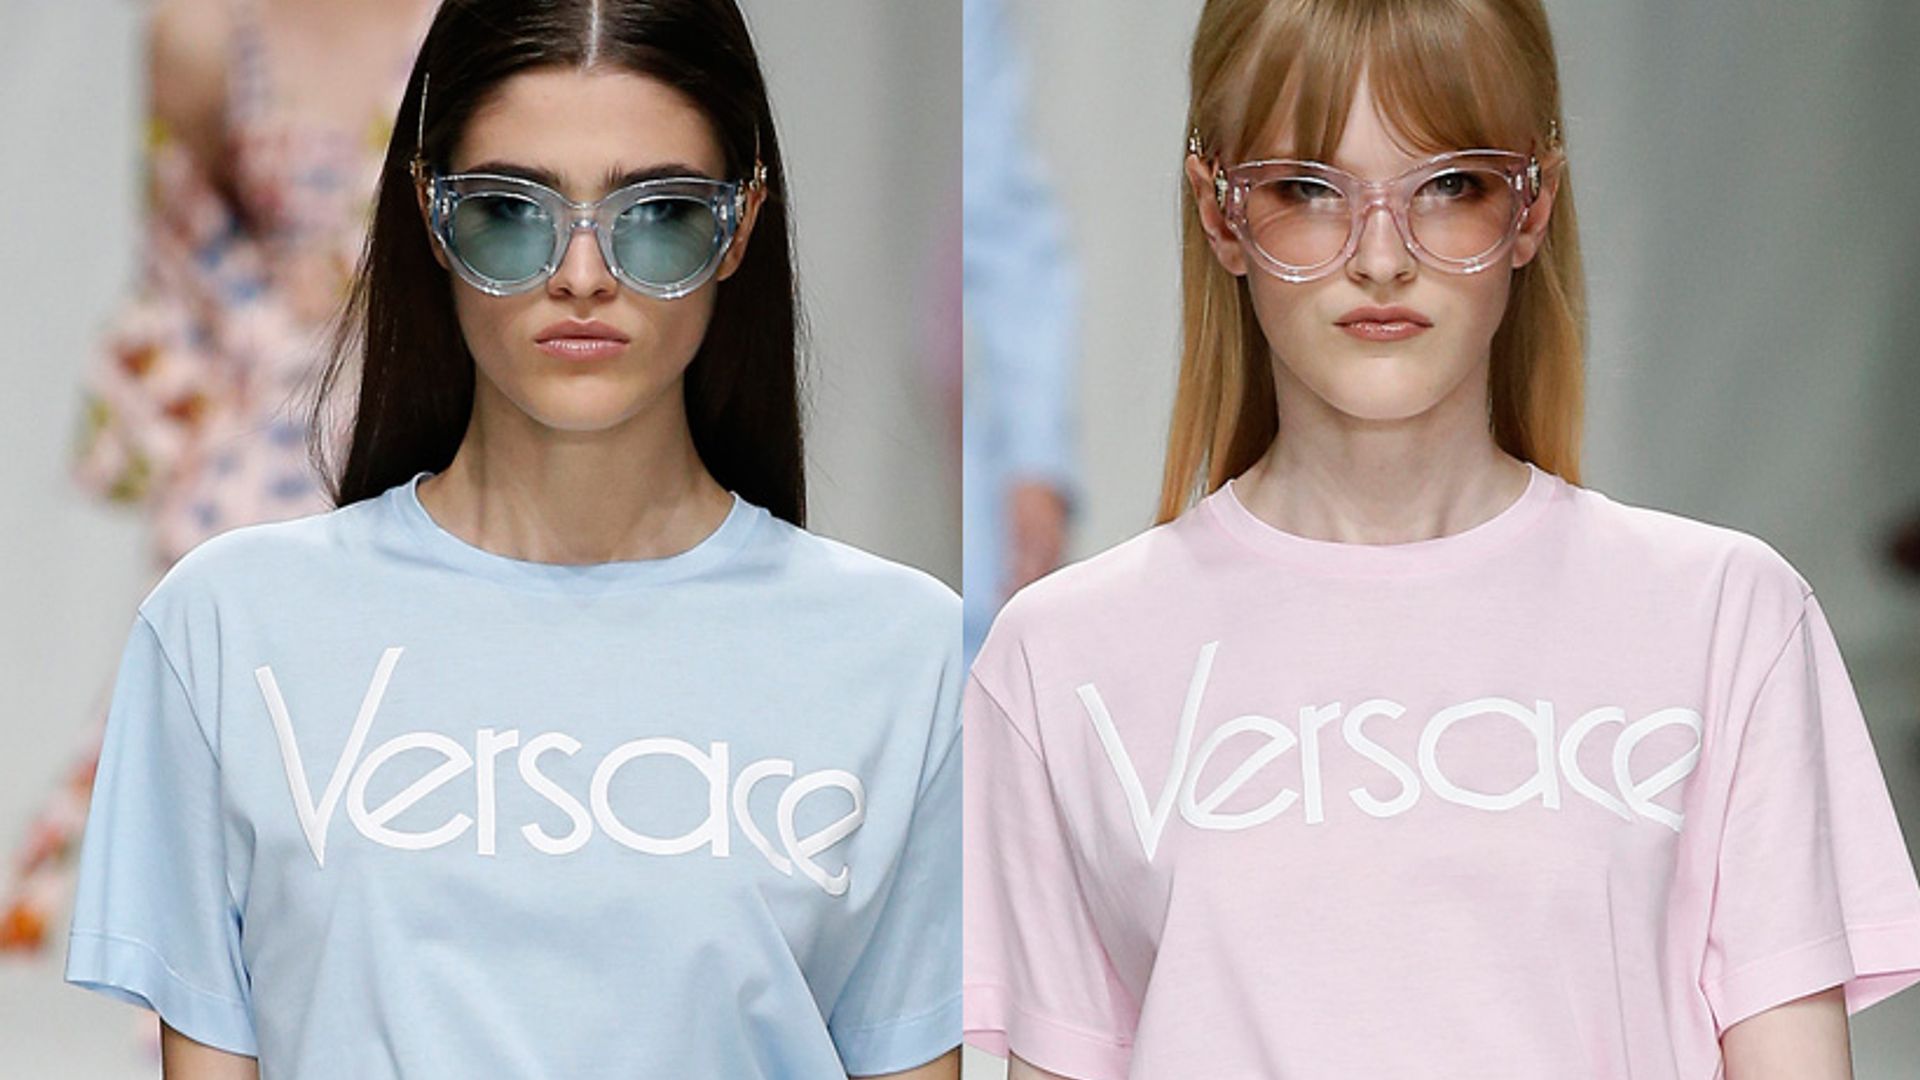 versace t shirt model shot